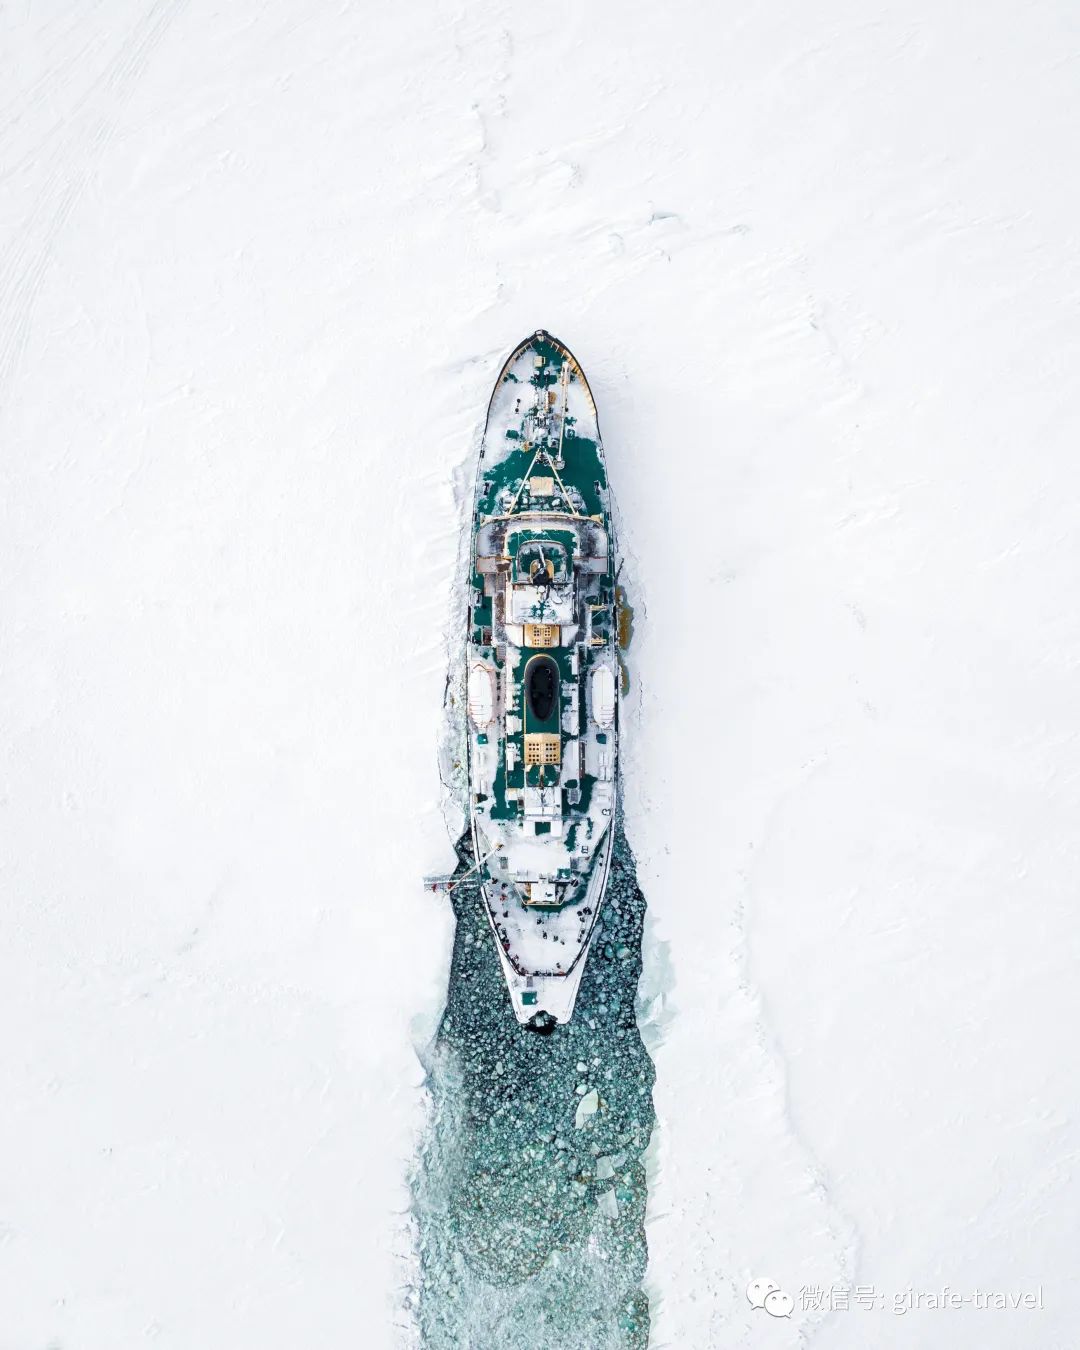 7小时+360℃度的冰雪体验，芬兰旅游瑰宝，桑普号不仅仅是破冰轮